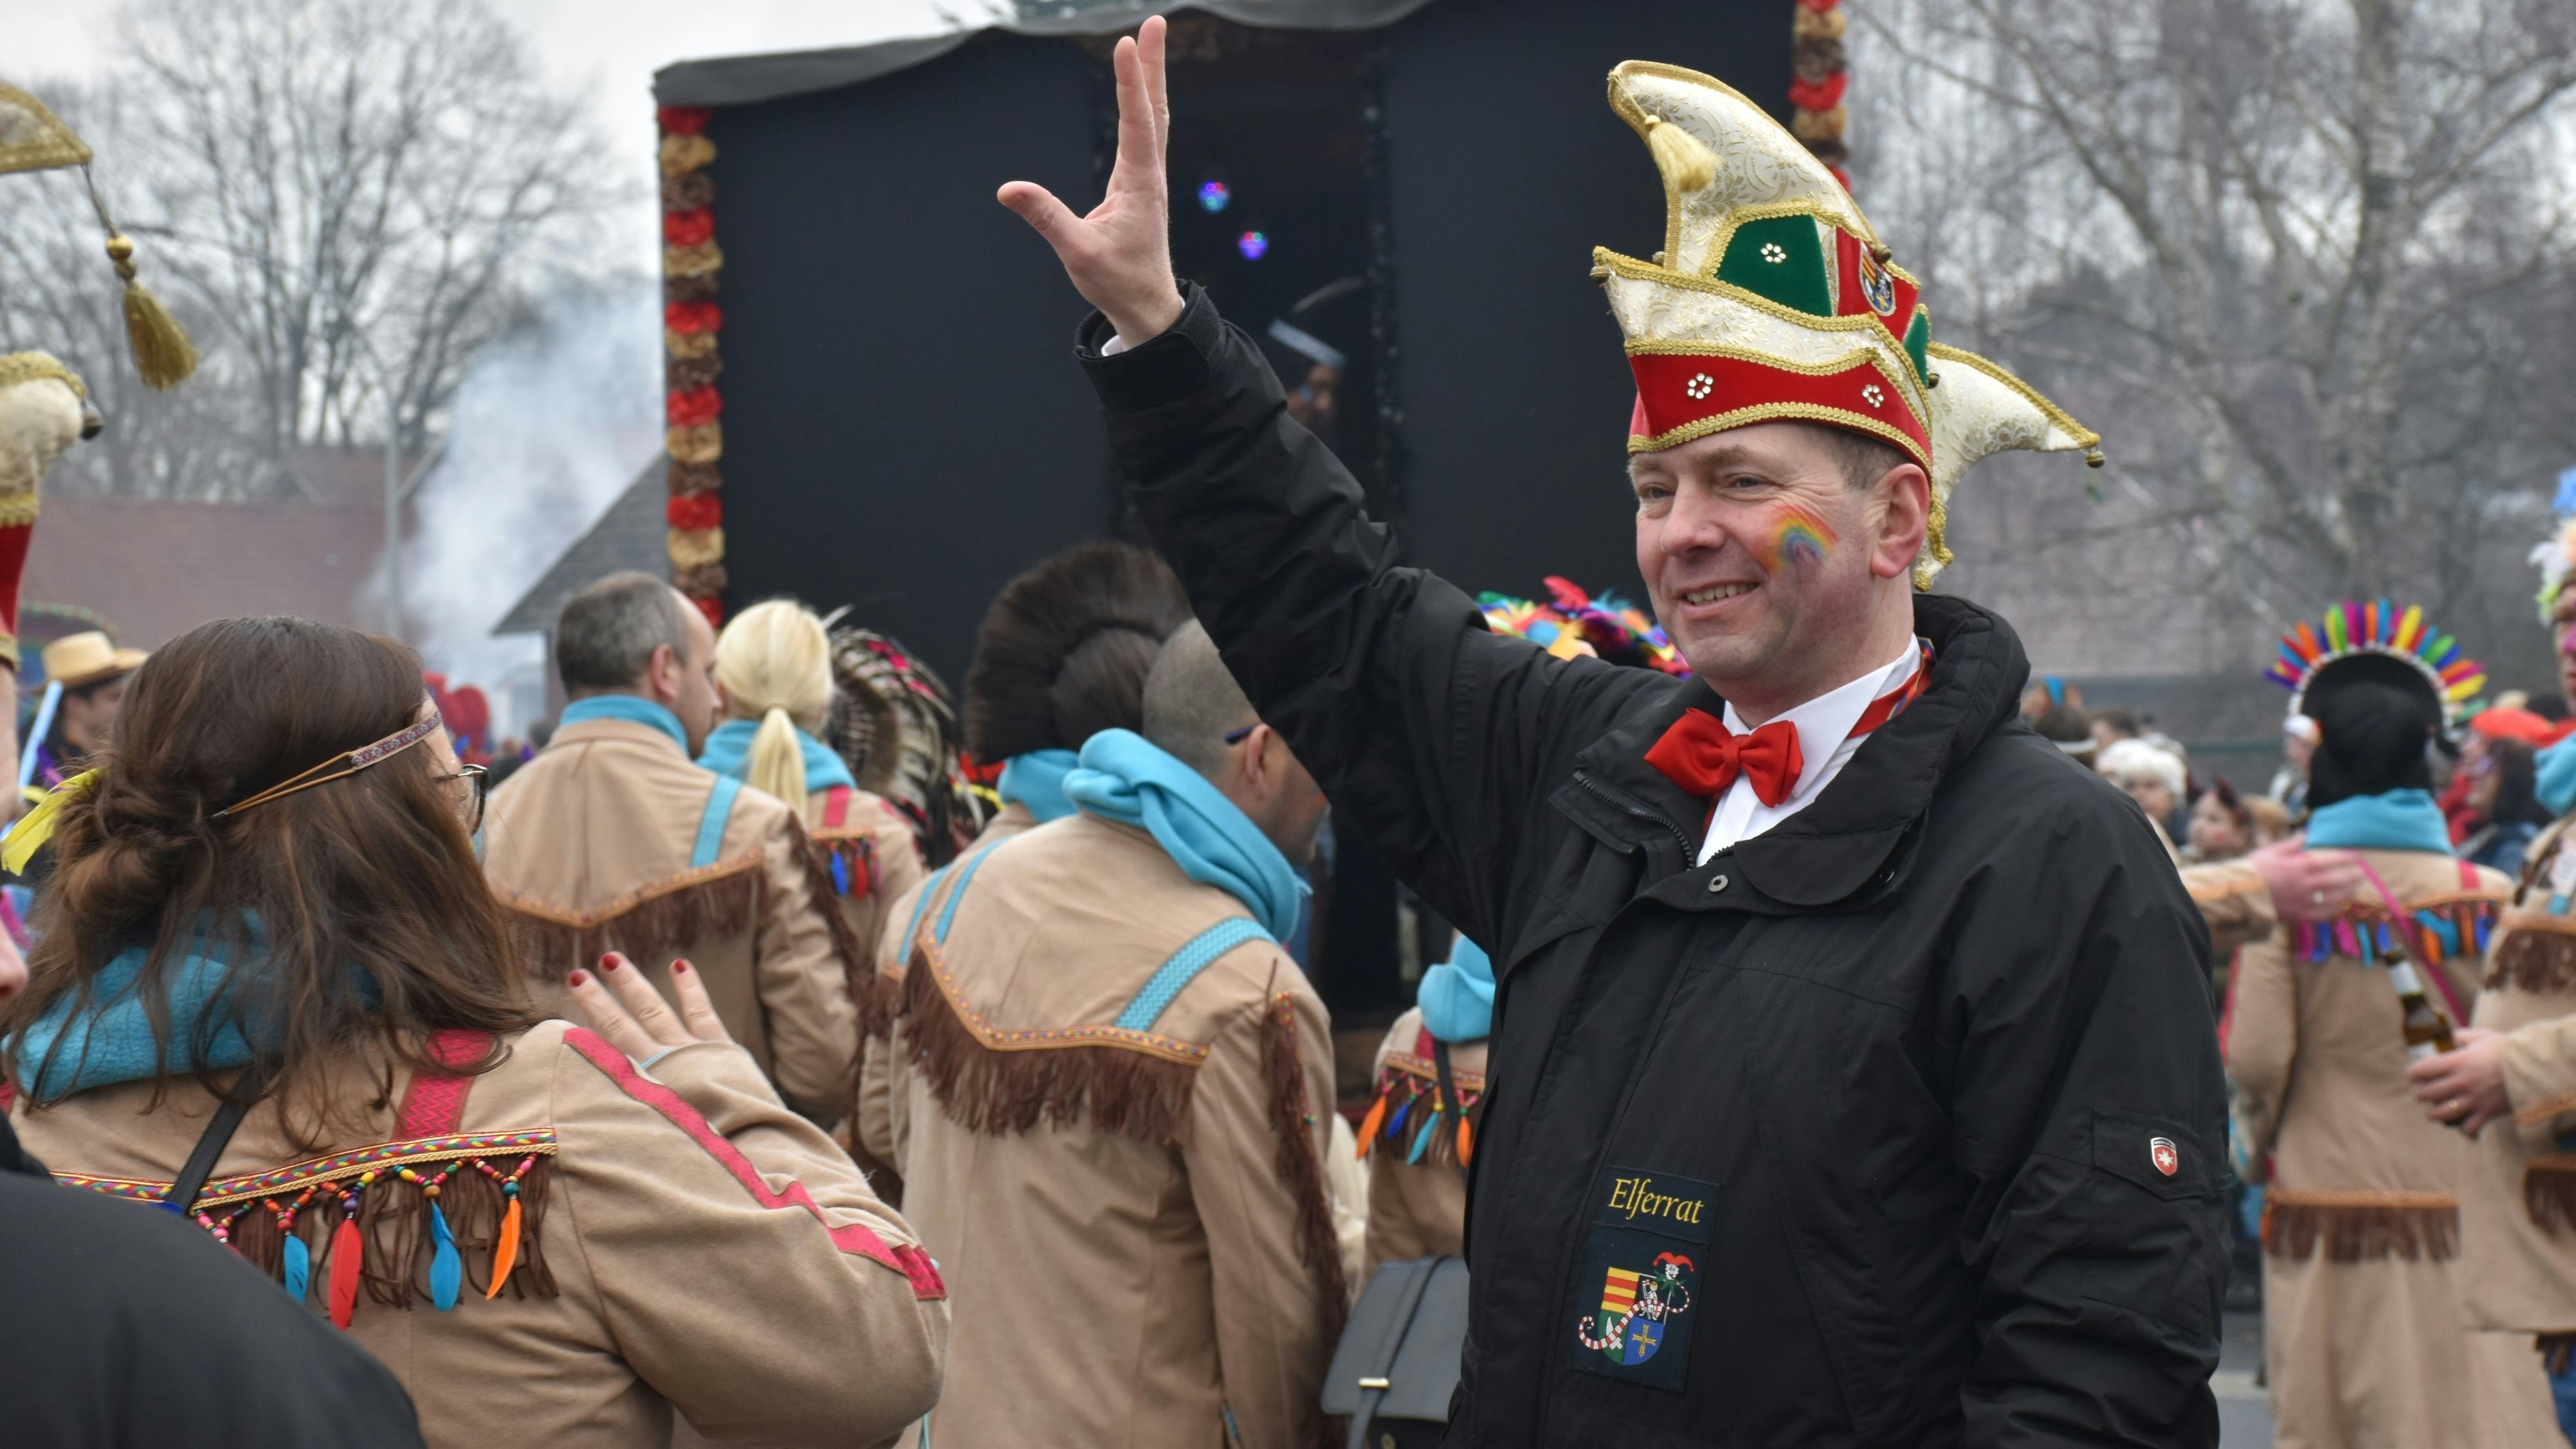 Helau: Thorsten Diekmann ist als Ansprechpartner für alles auf dem Carneval unterwegs. Fotos: Röben